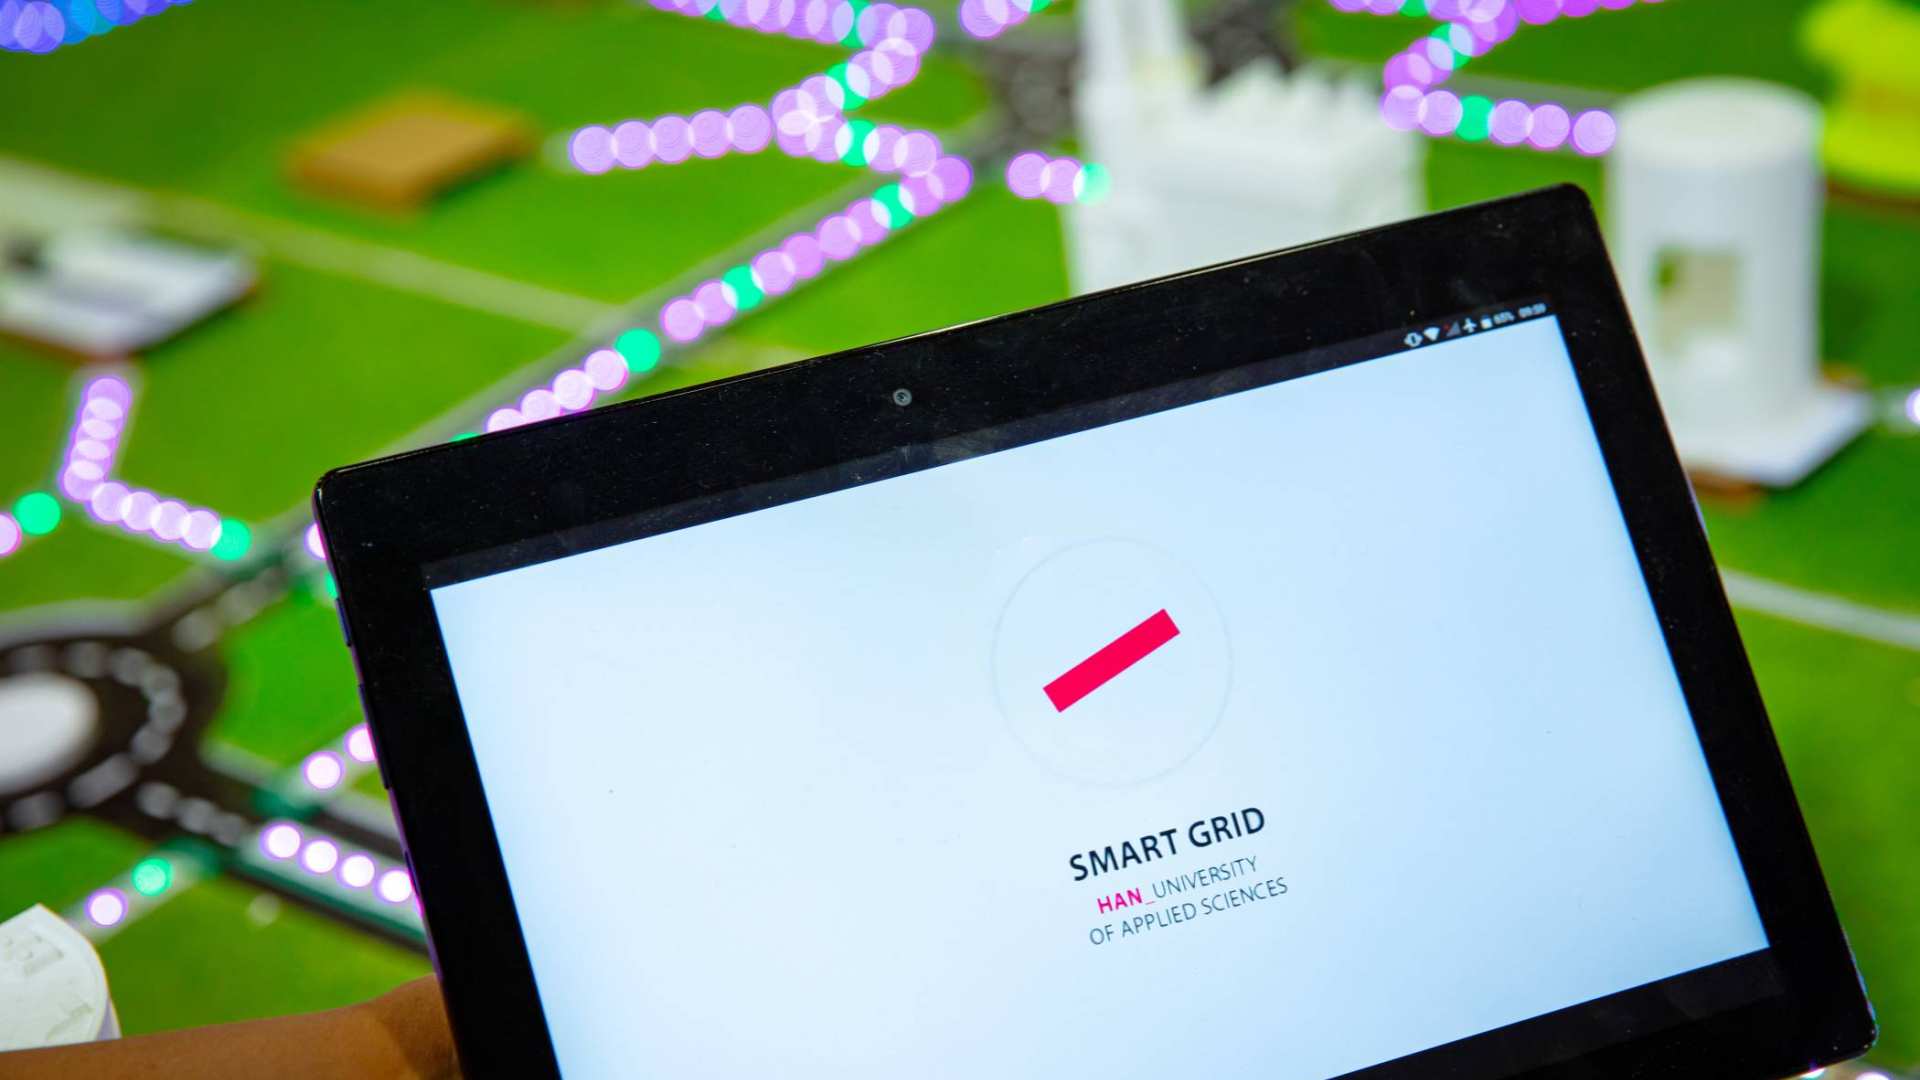 35030 Power grid met smart grid app op tablet